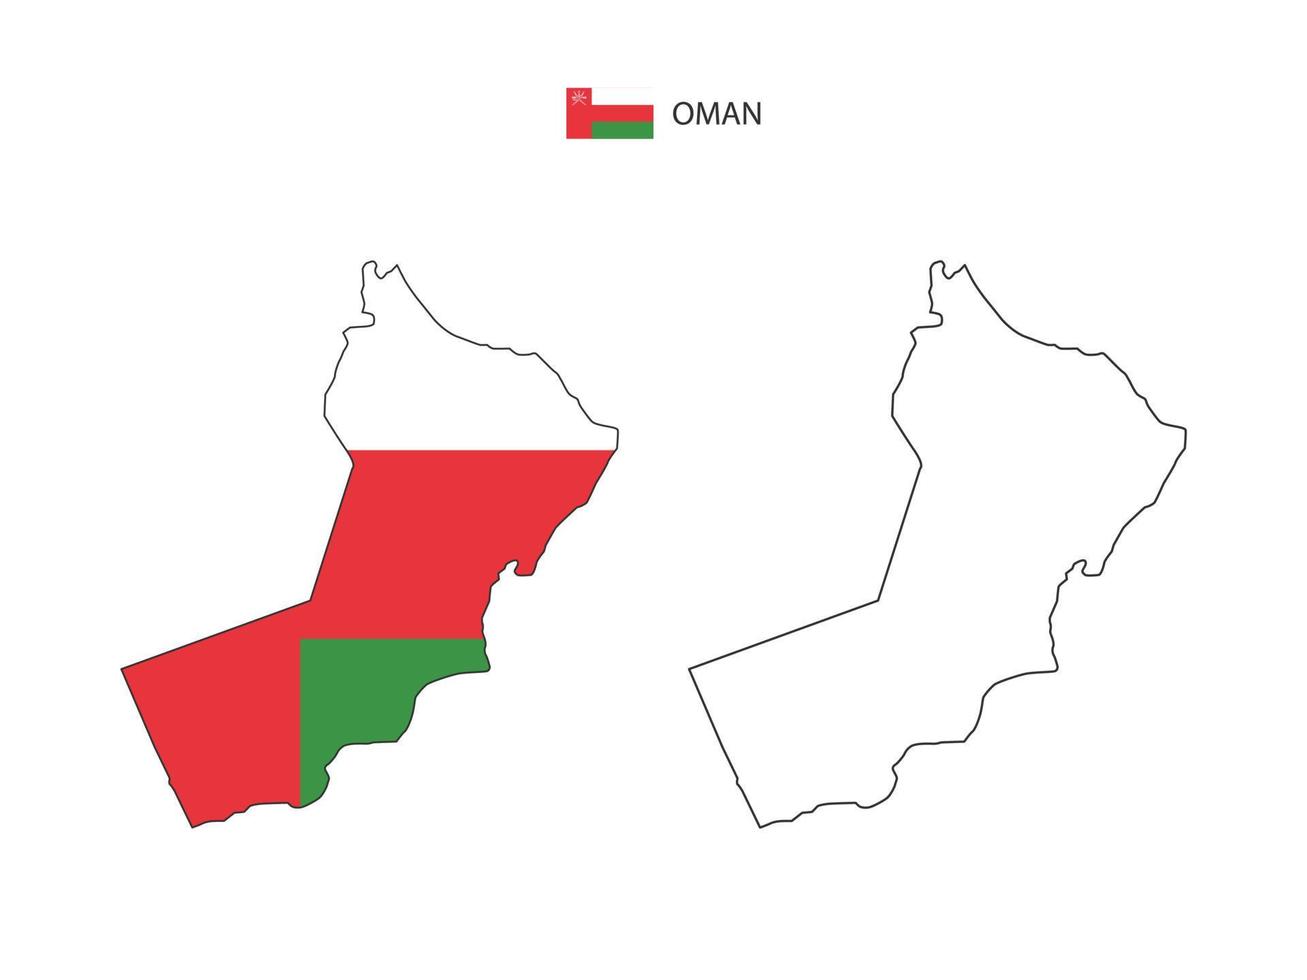 Oman-Karte Stadtvektor geteilt durch Umriss-Einfachheitsstil. haben 2 Versionen, eine schwarze Version mit dünner Linie und eine Version in der Farbe der Landesflagge. beide Karten waren auf dem weißen Hintergrund. vektor